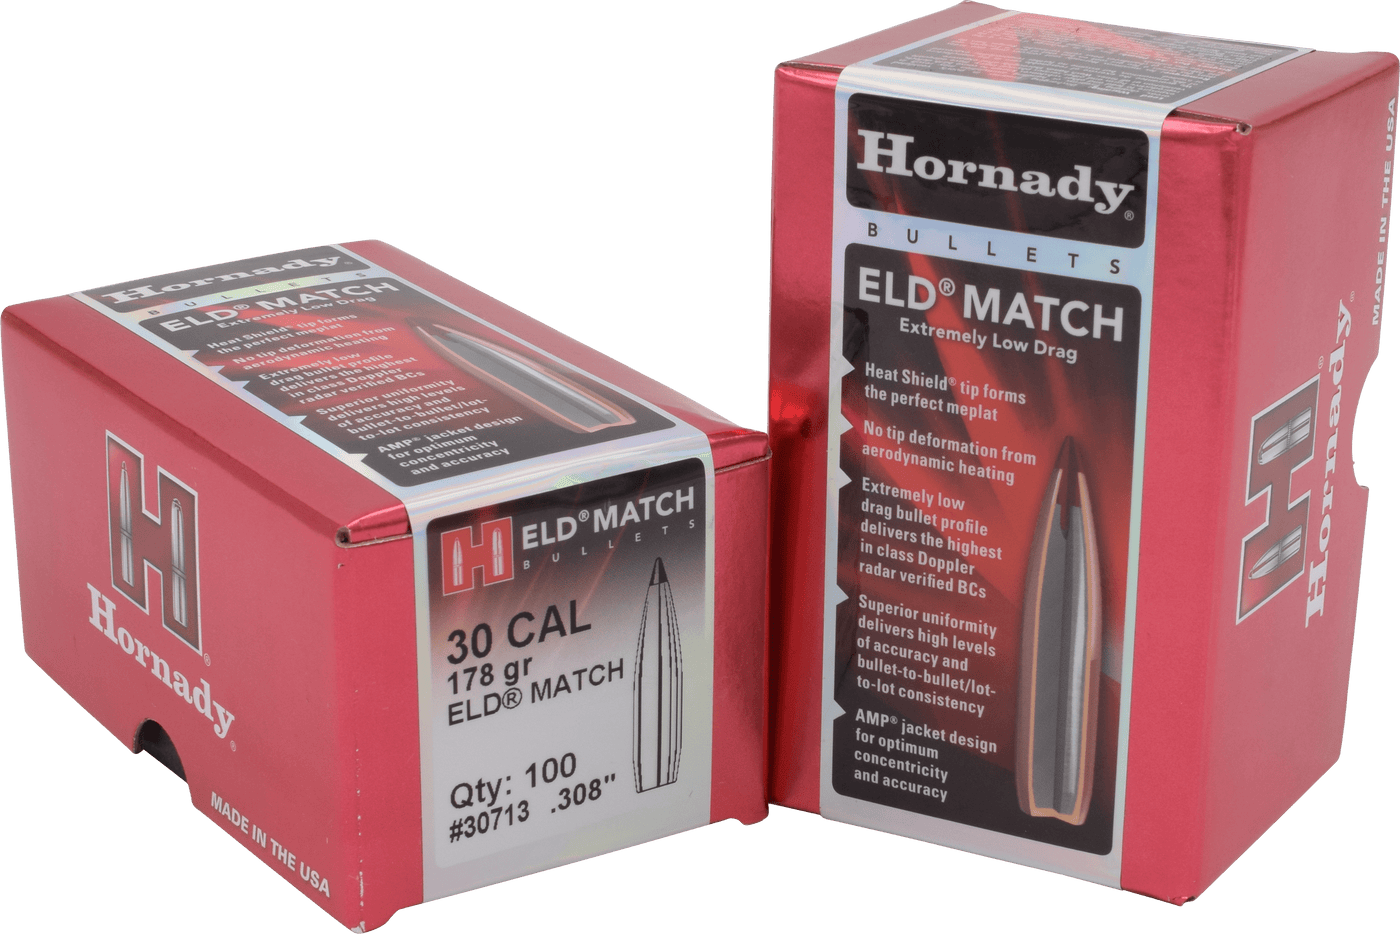 Hornady Hornady Eld Match Bullets 30 Cal. .308 178 Gr. Eld Match 100 Box Reloading